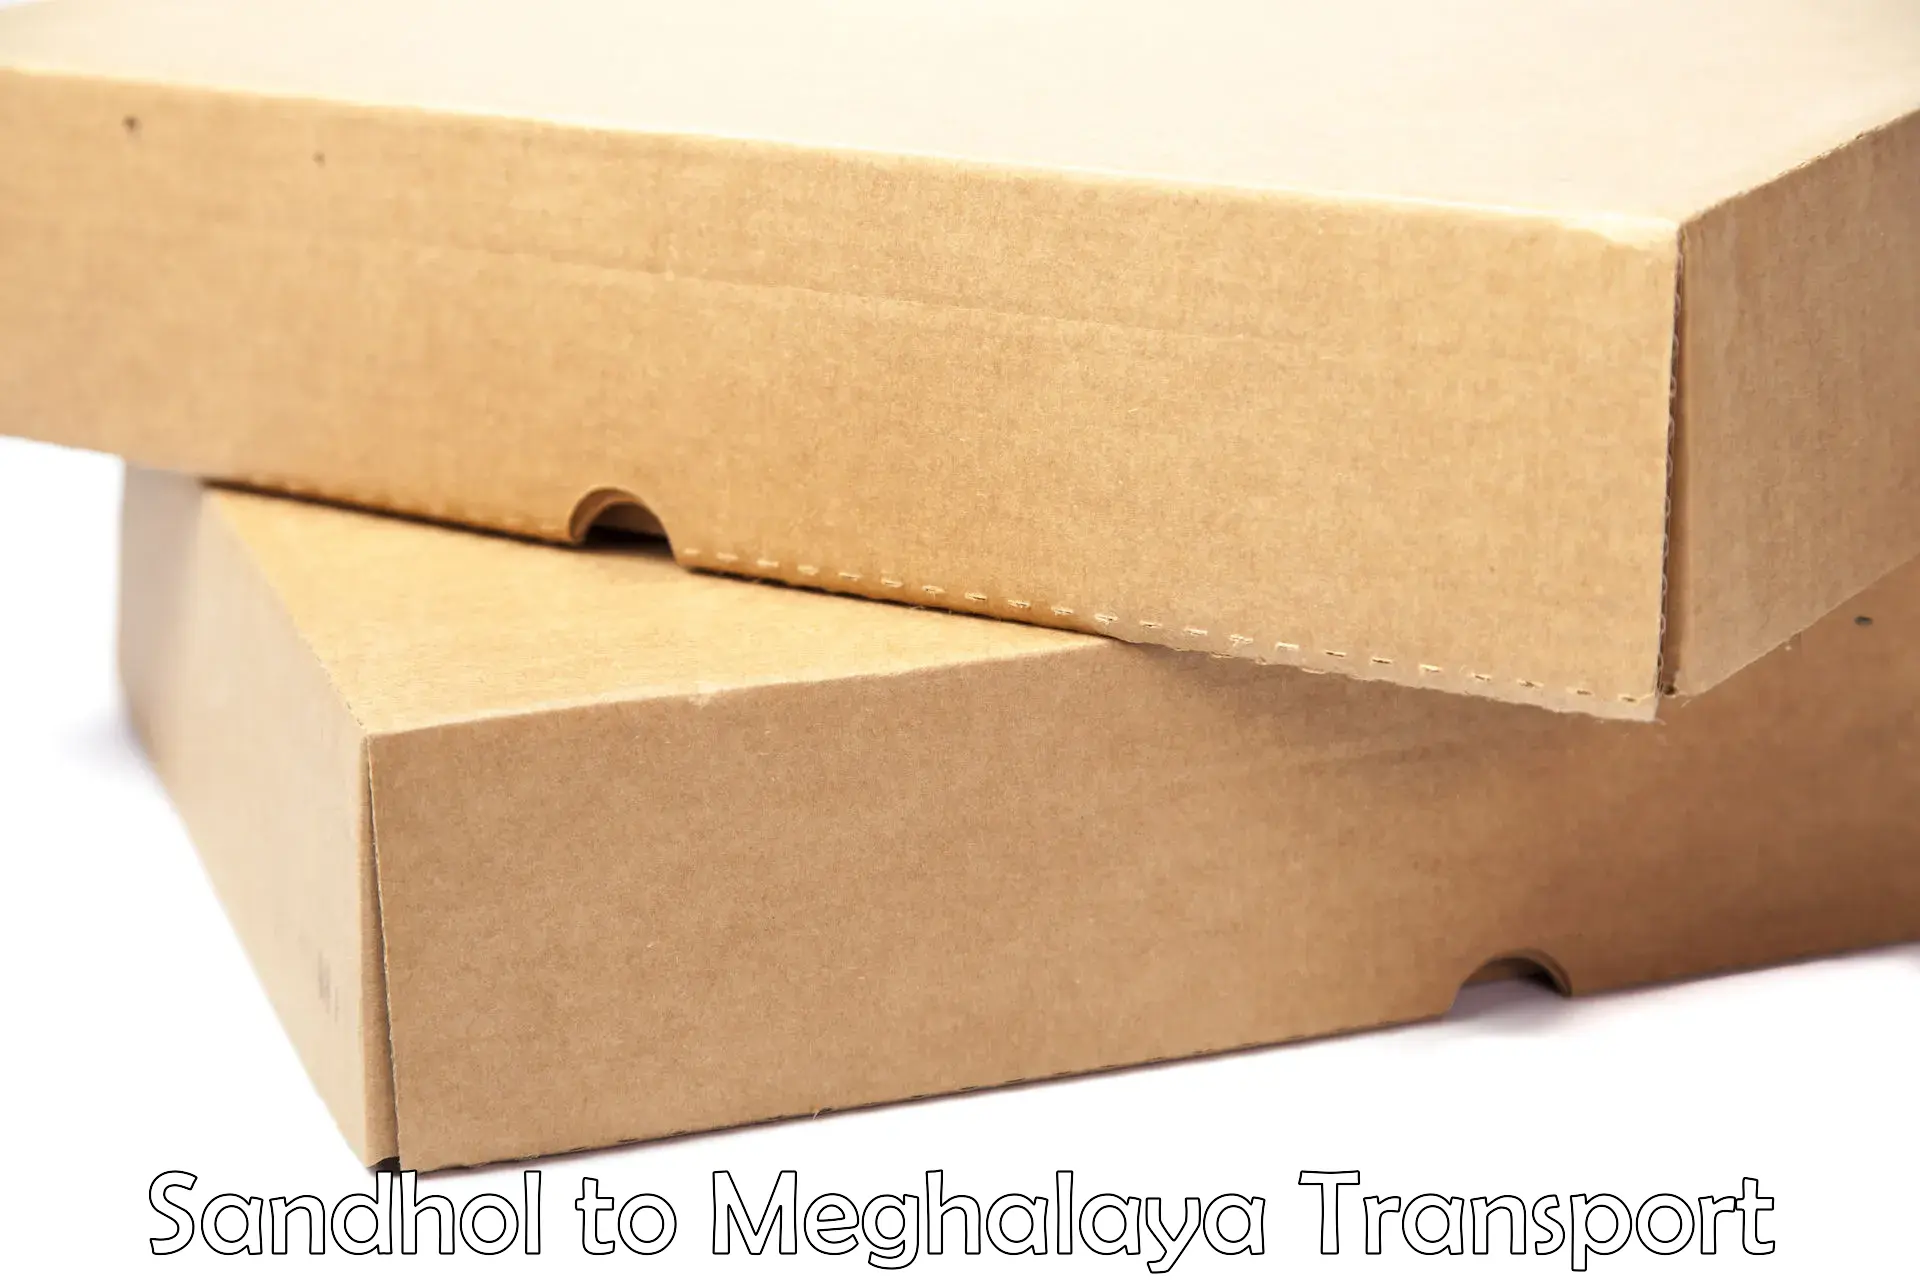 Daily parcel service transport Sandhol to Meghalaya